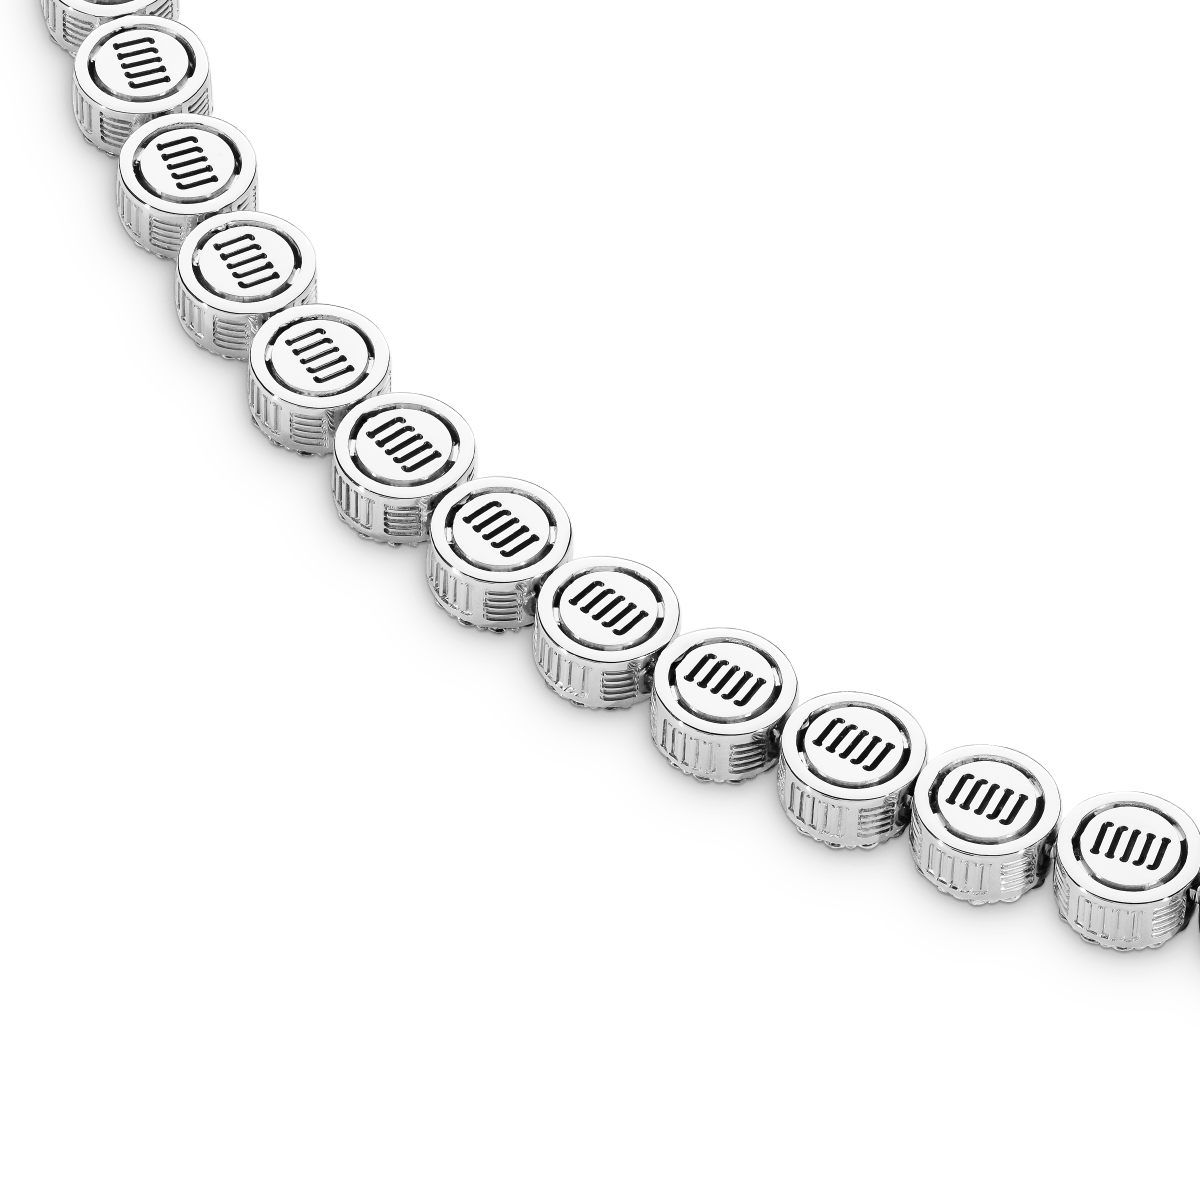 DNA Round Chain